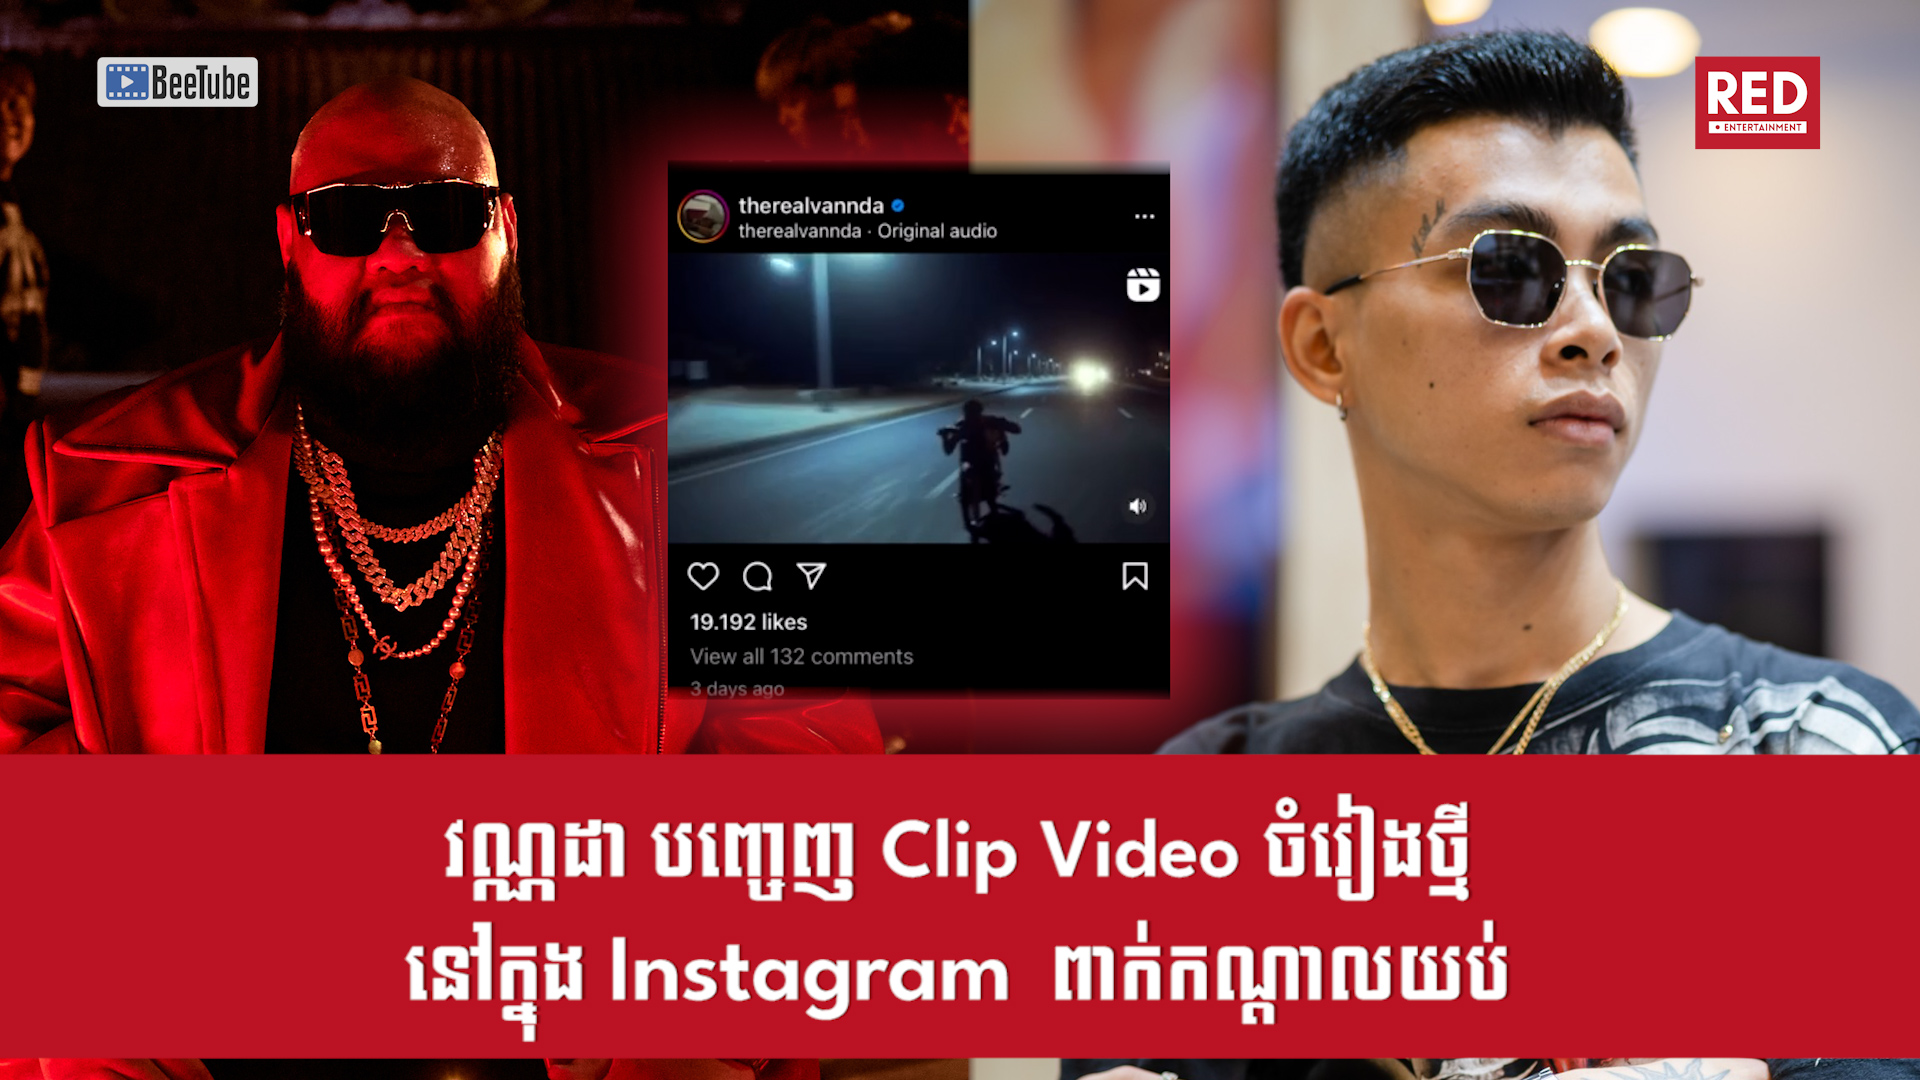 វណ្ណដា បញ្ចេញ Video Clip ចំរៀងថ្មីរបស់ខ្លួននៅក្នុង Instagram ទាំងពាក់កណ្តាលយប់